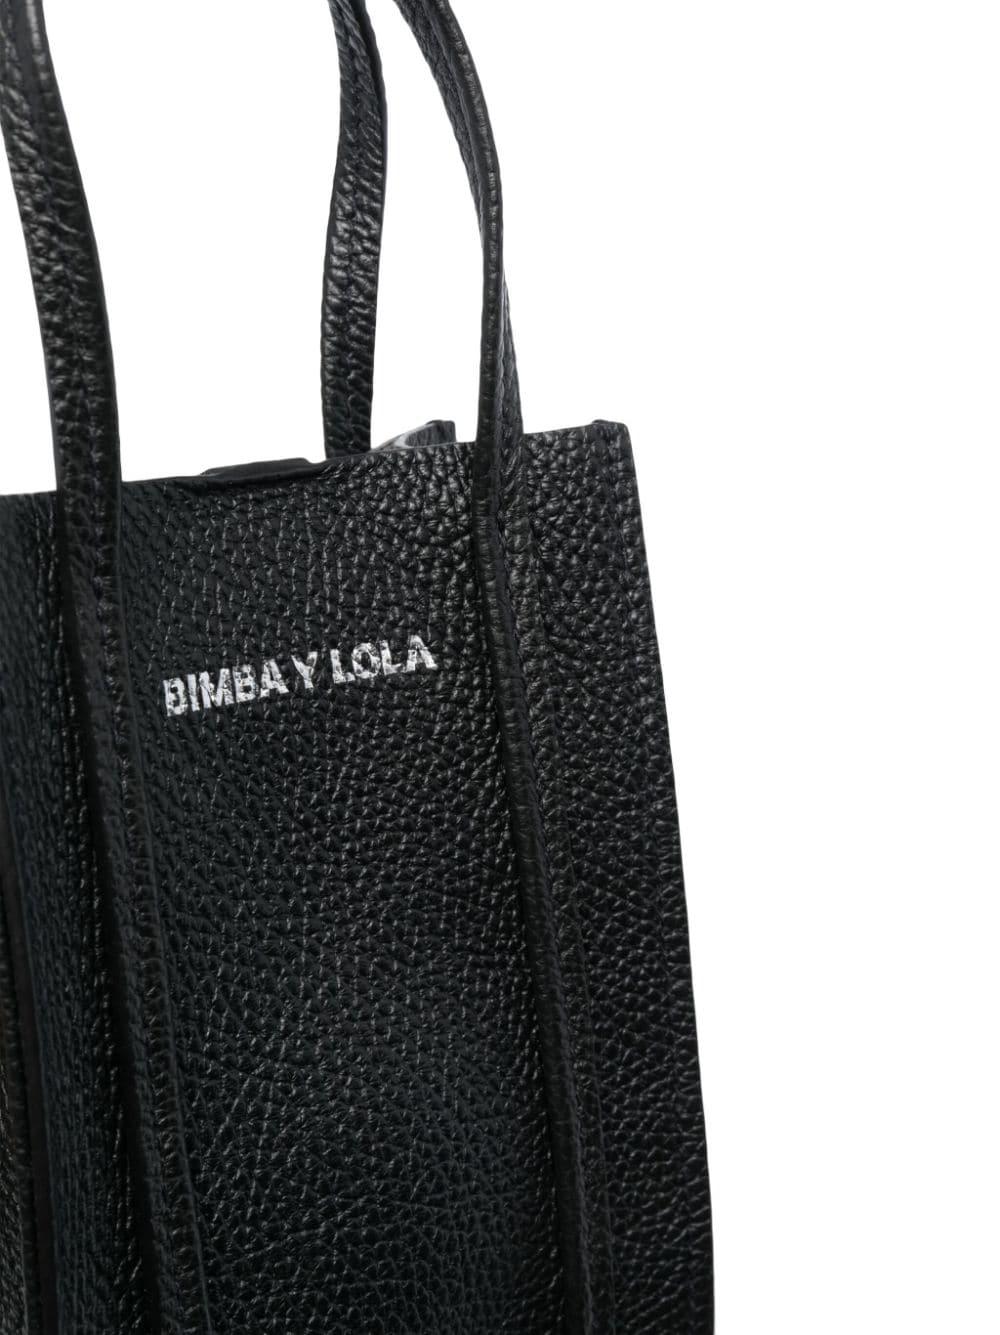 Bimba y Lola Small Leather Crossbody Bag - Farfetch